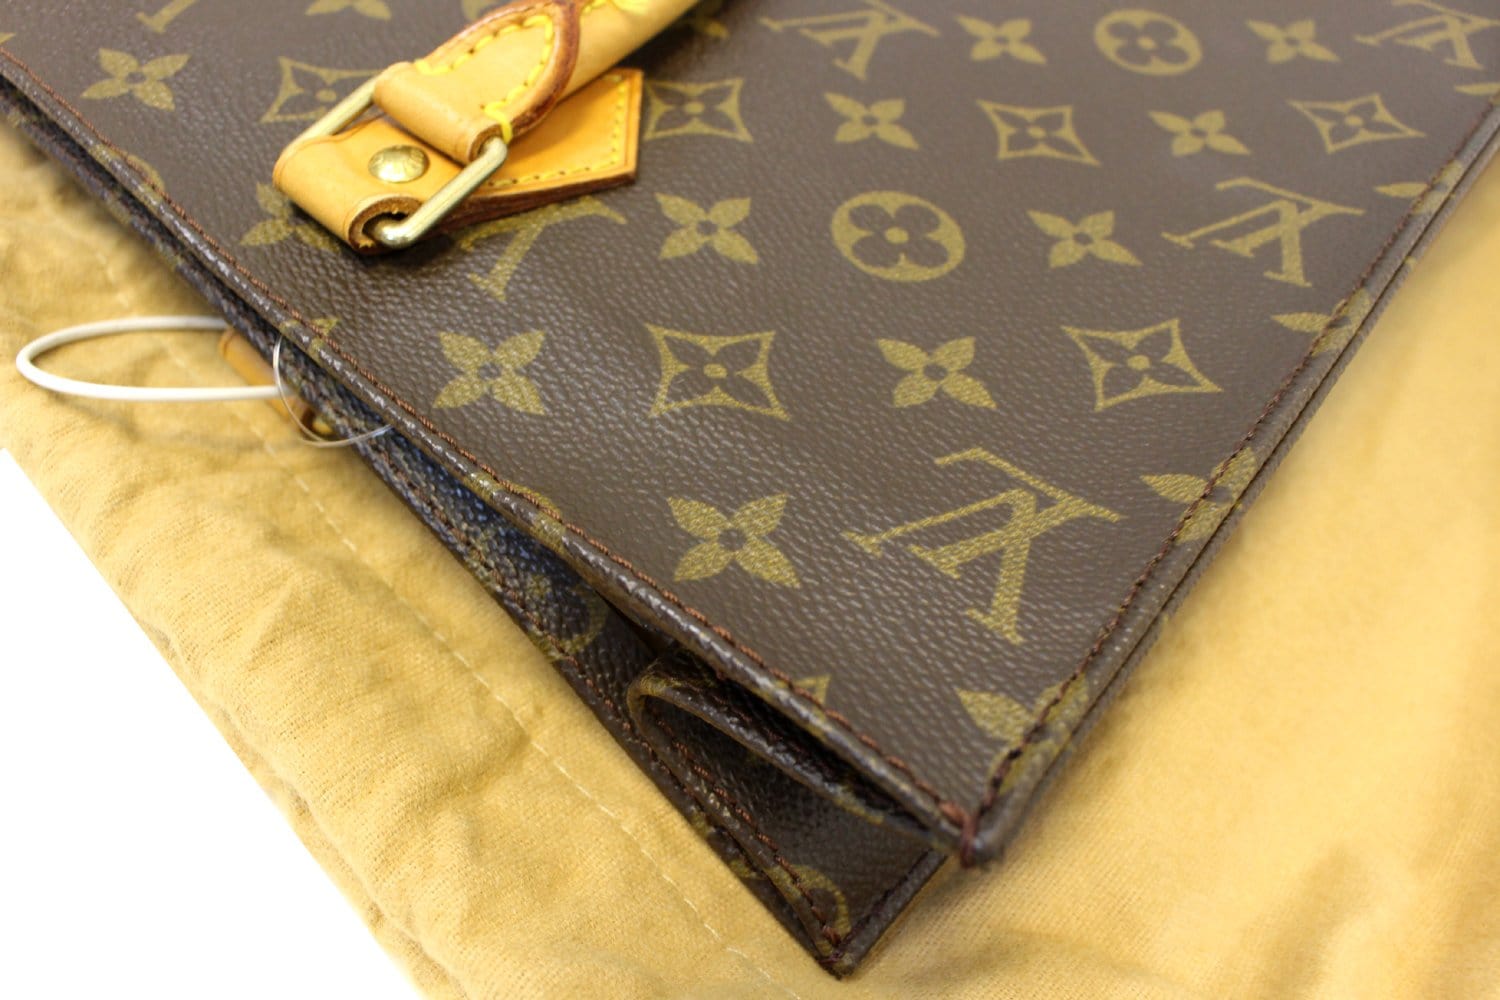 Louis Vuitton Monogram Sac Plat - Brown Totes, Handbags - LOU459834